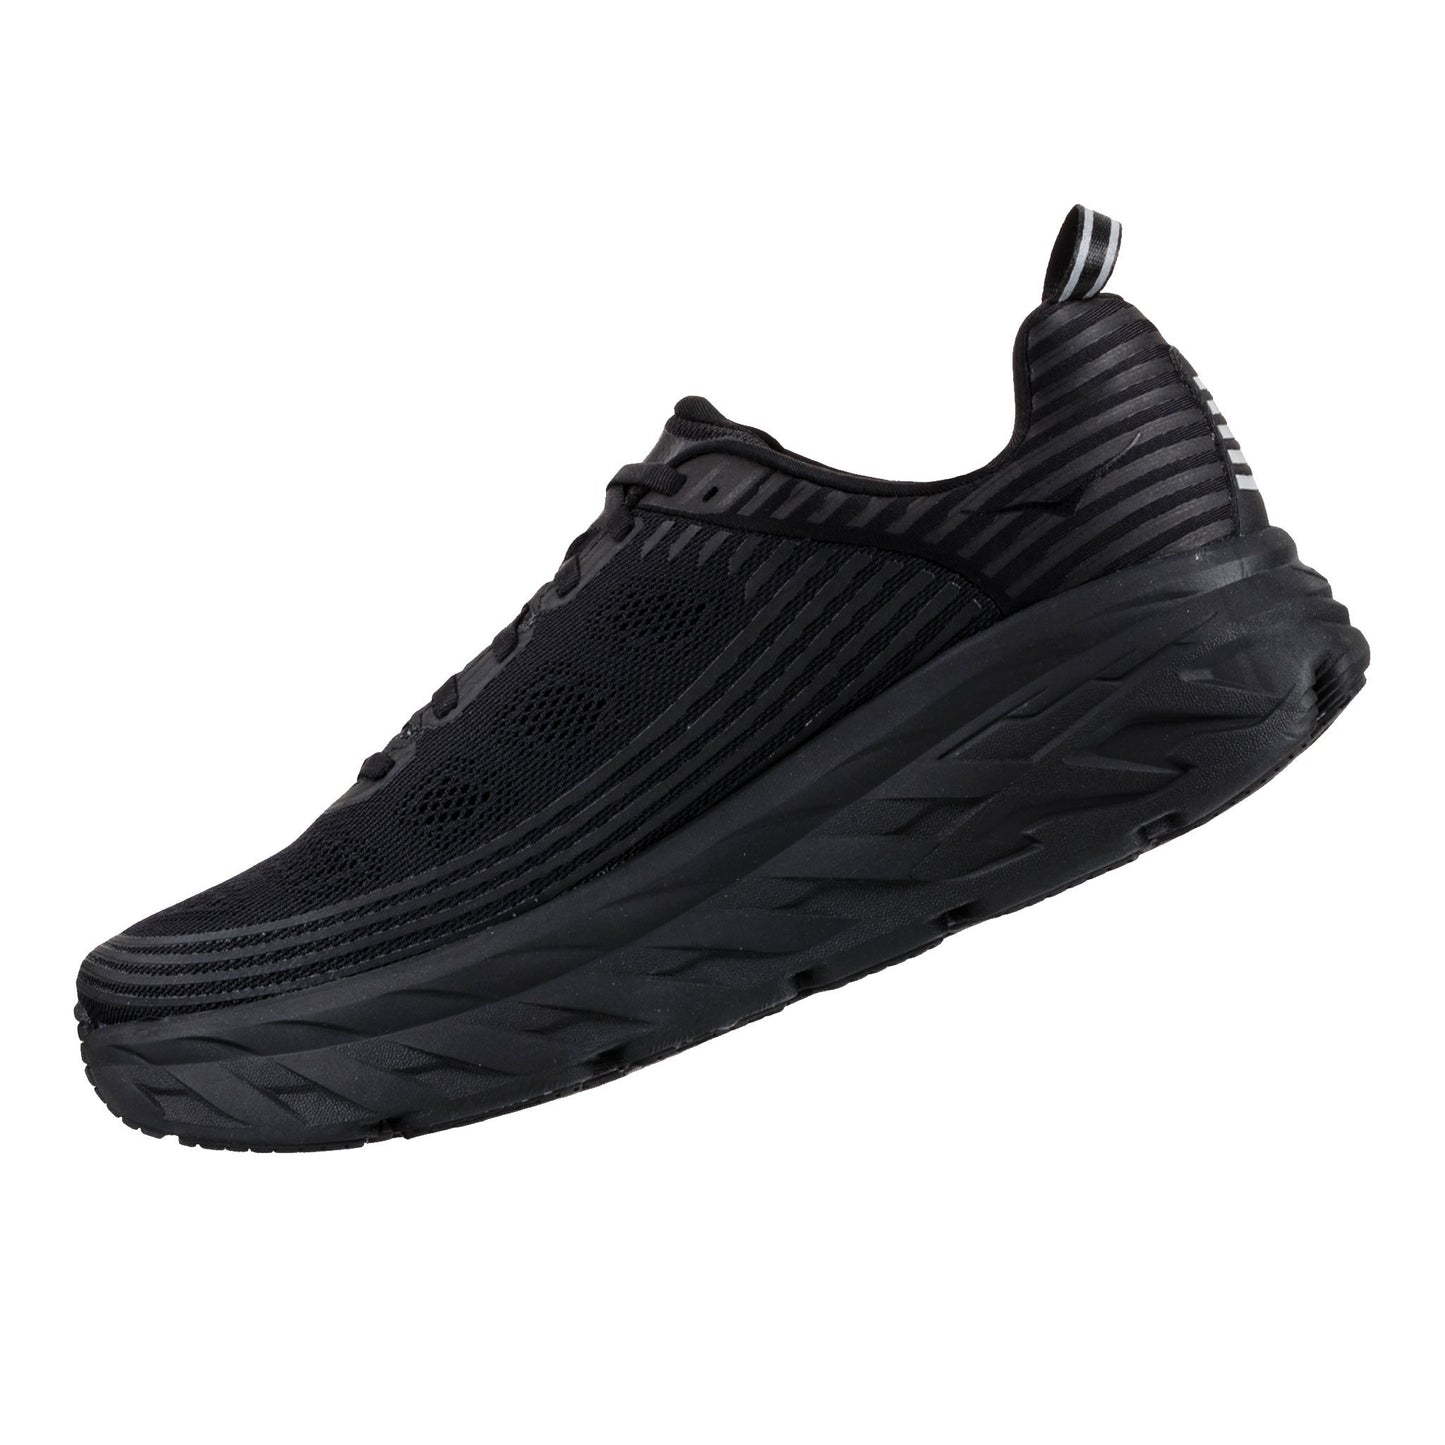 hoka one one shoes online bondi 6 black runners footwear sneakers